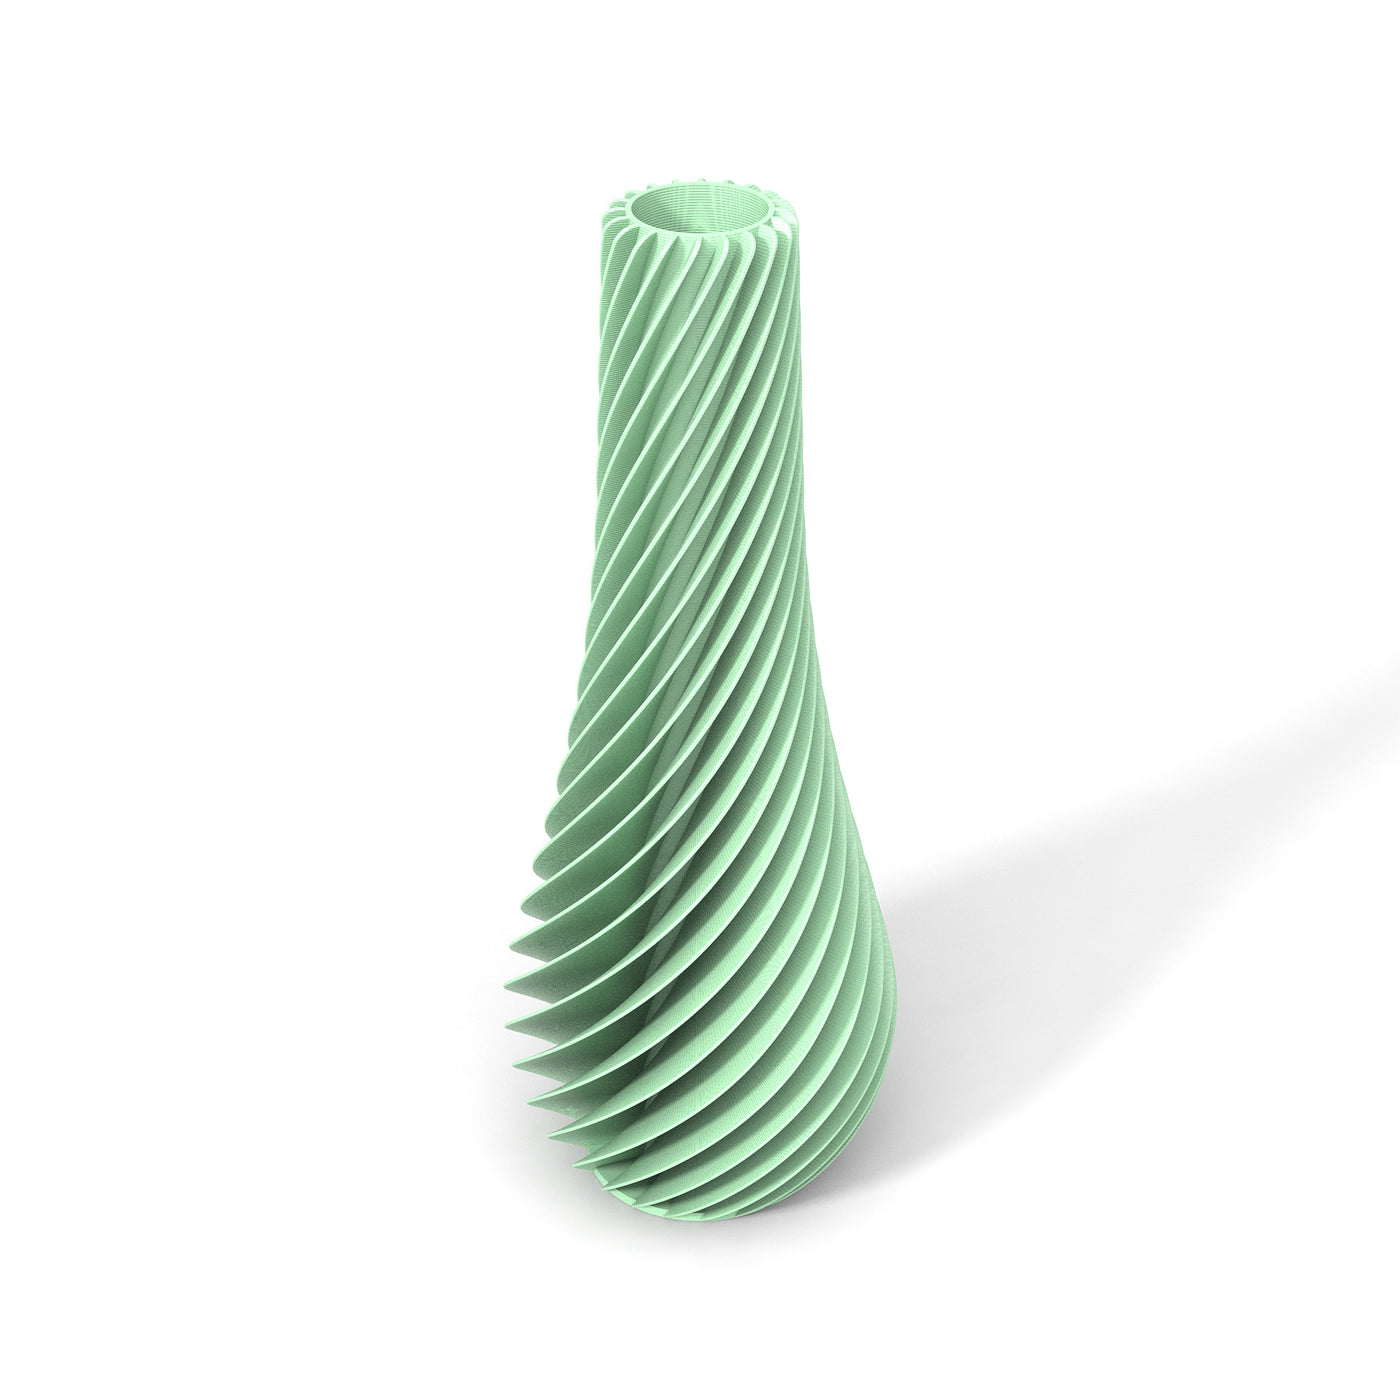 Pastelově zelená designová váza 3D print SPIRAL 2